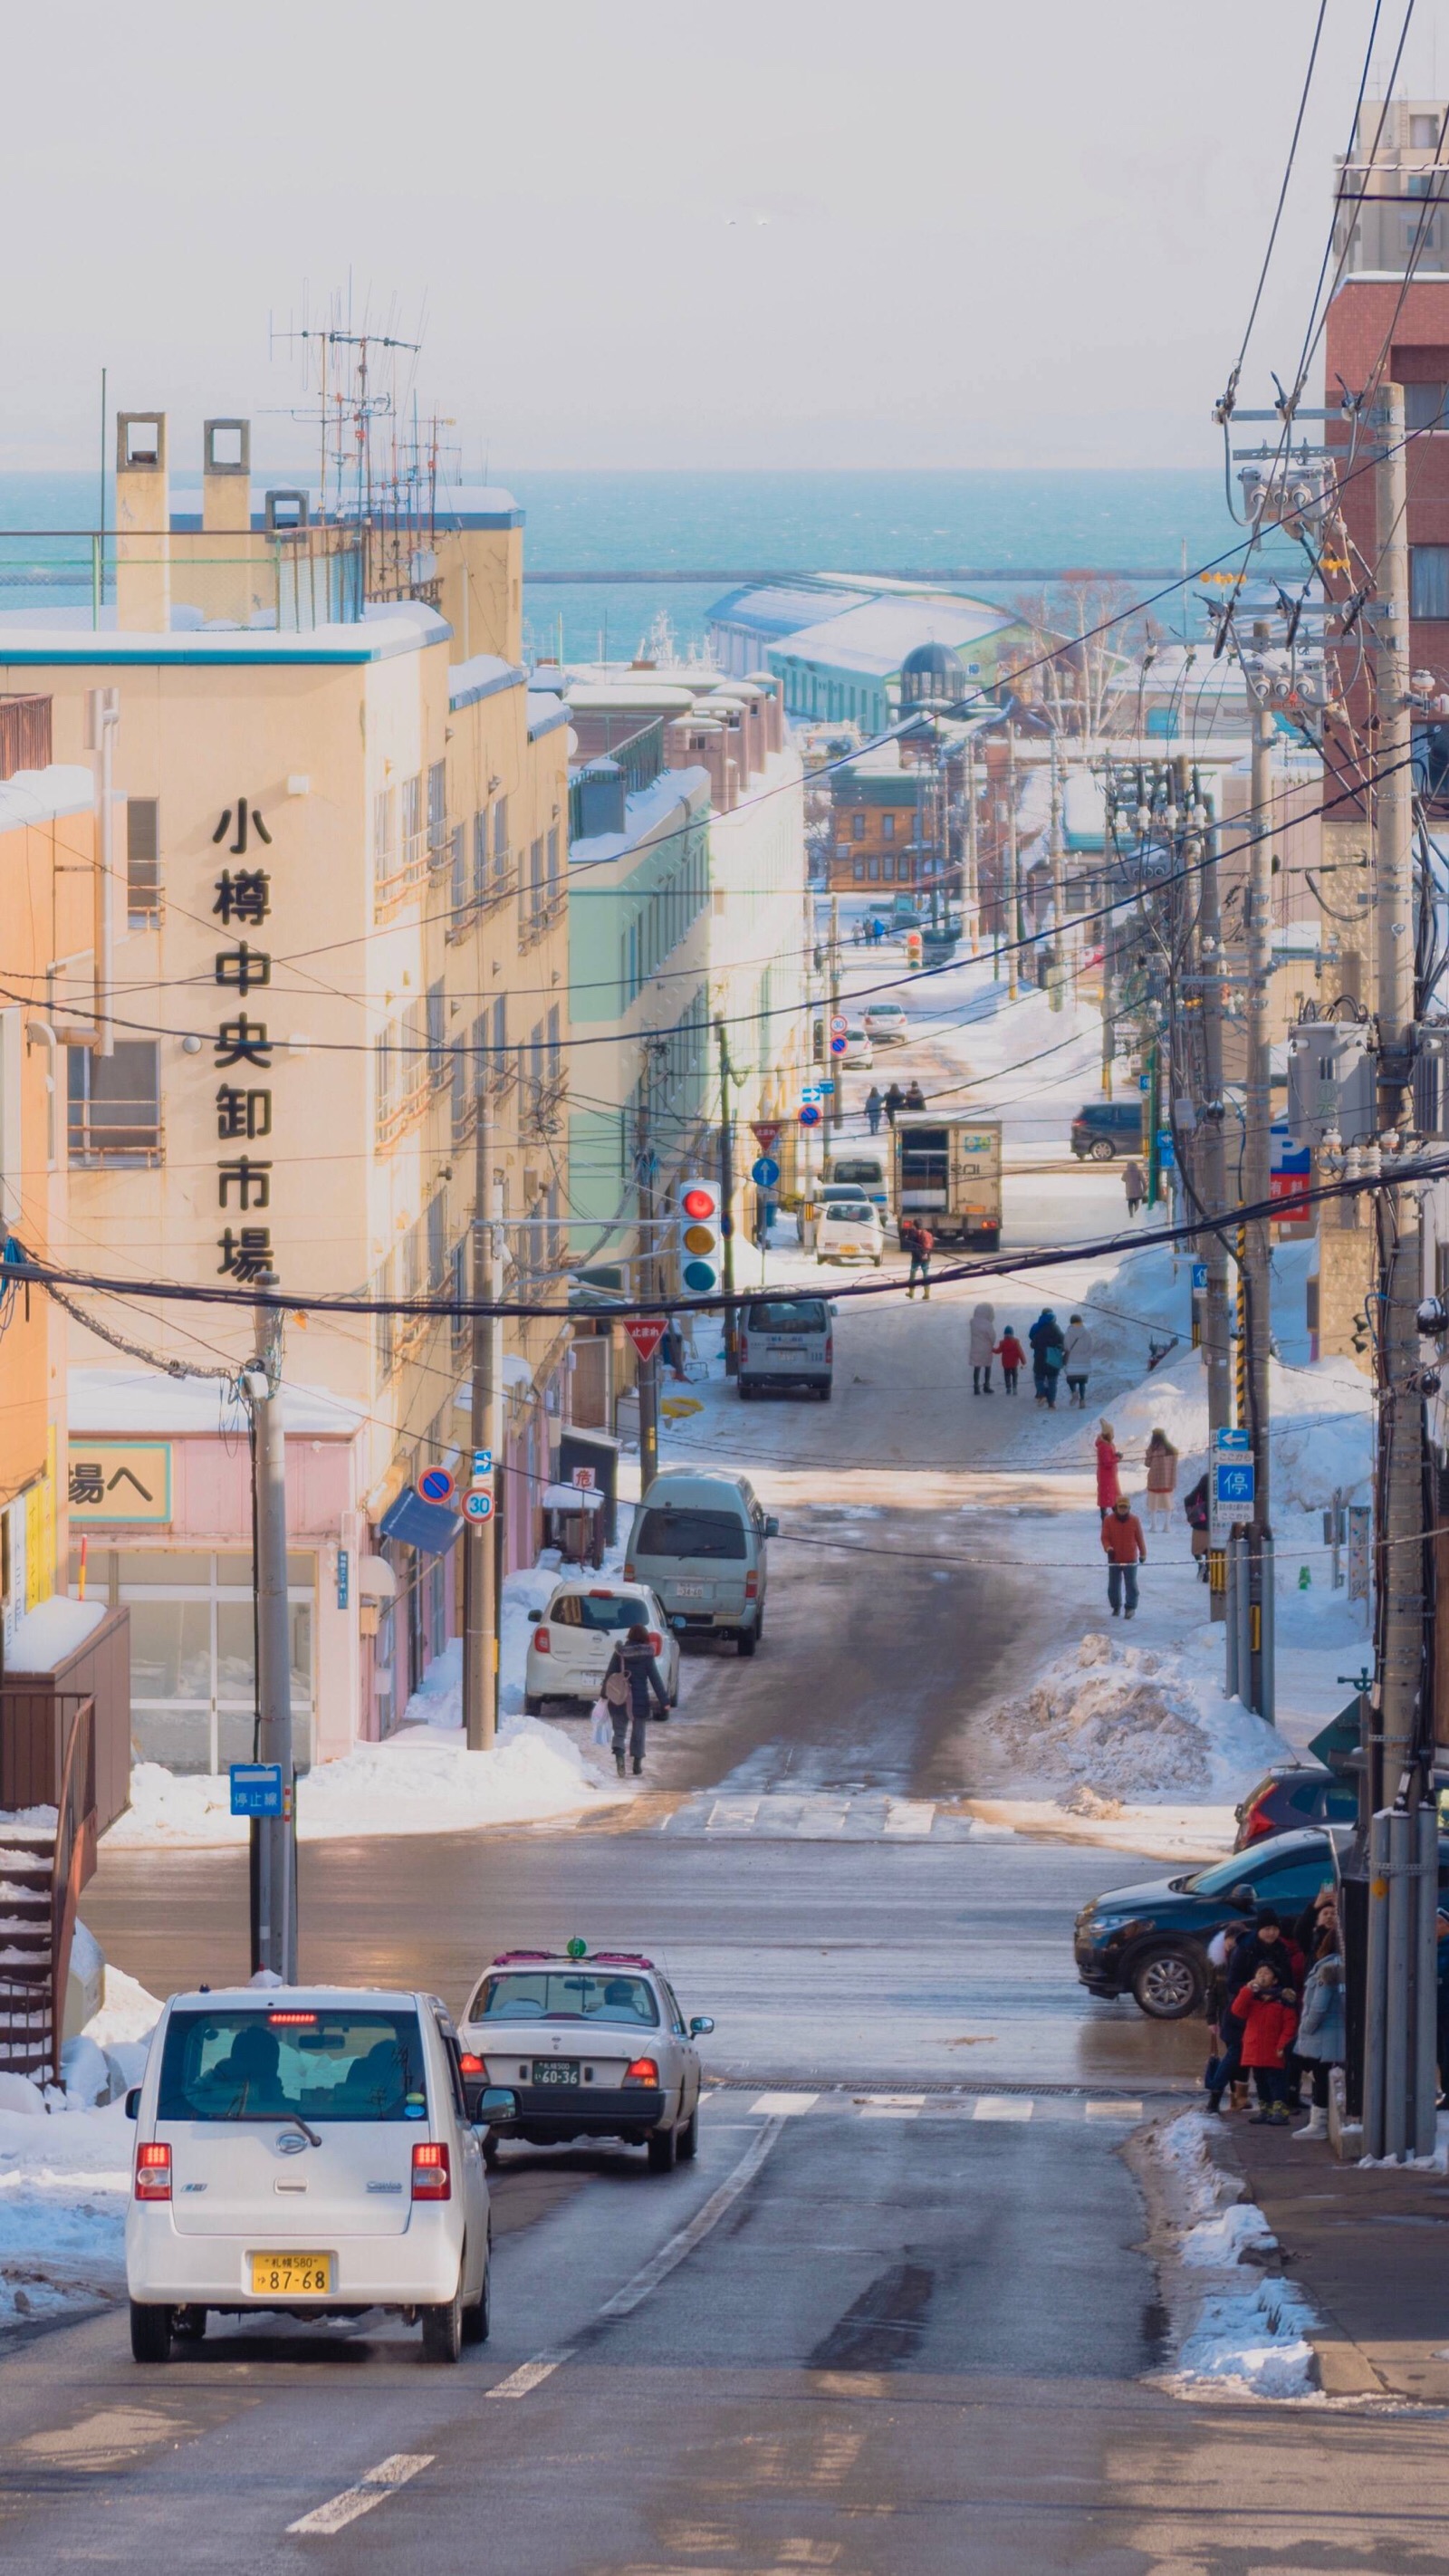 冬日的北海道摄影师:渲染一个嘉 - 堆糖,美图壁纸兴趣社区